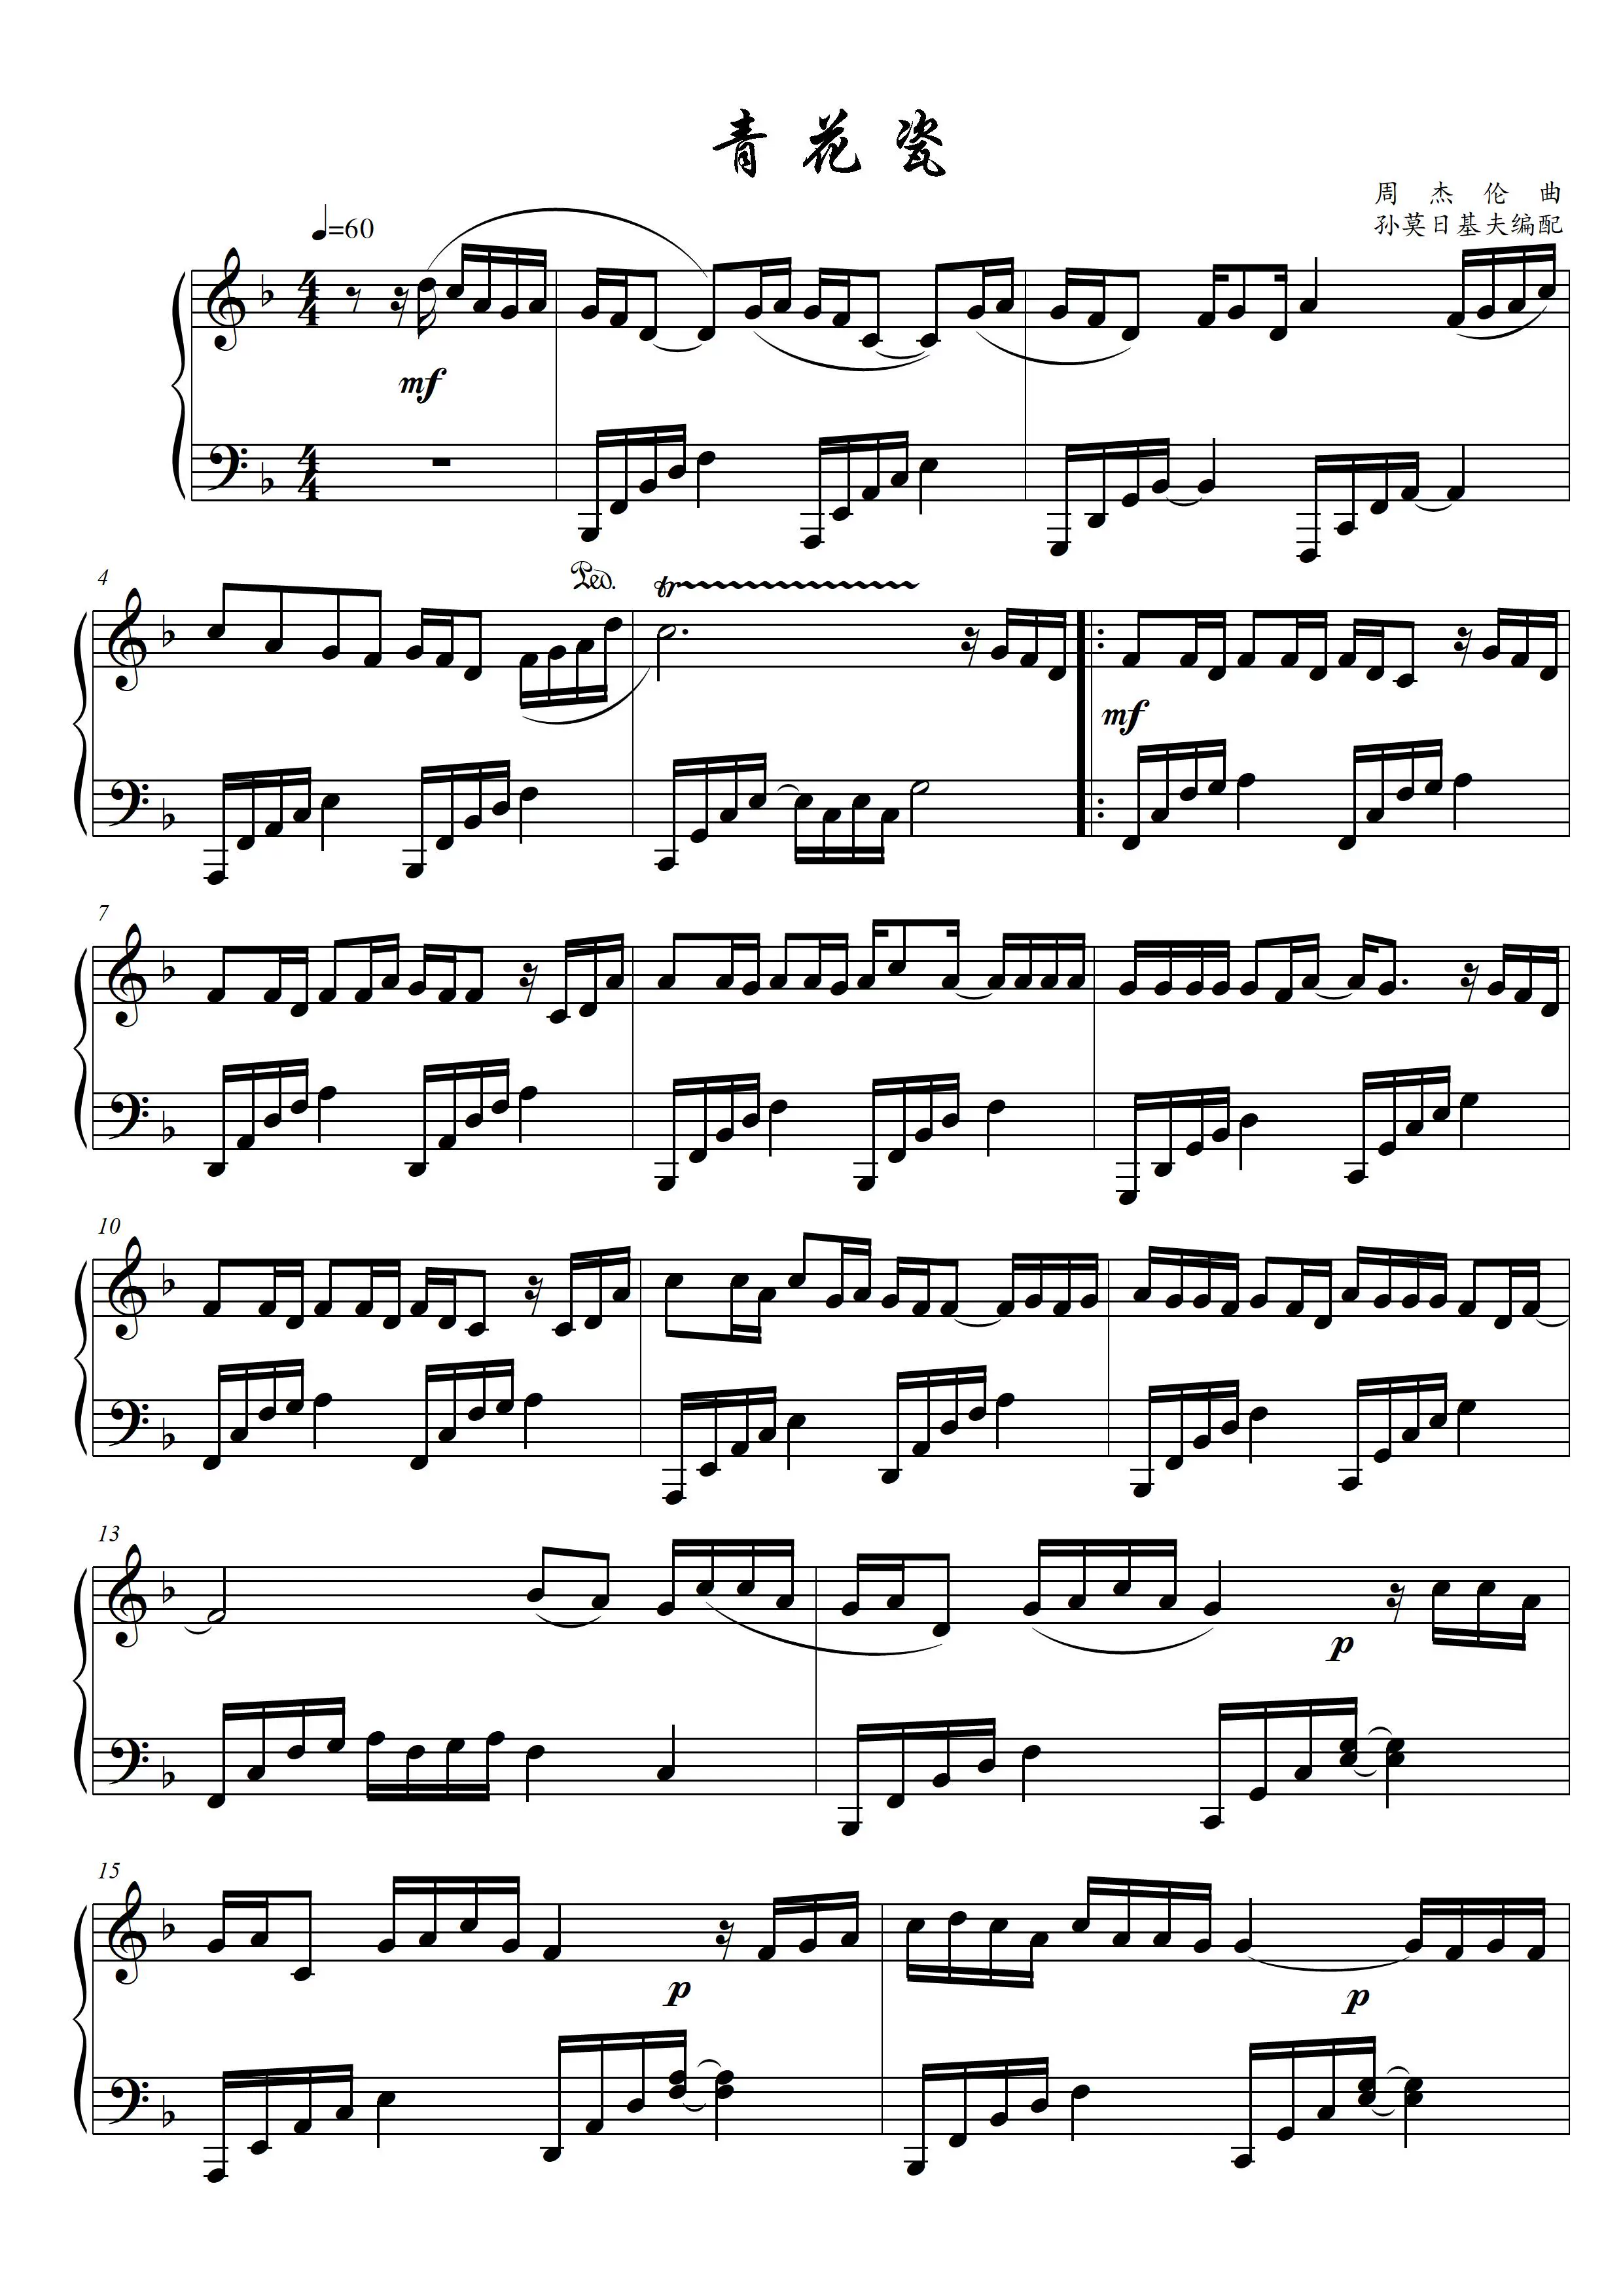 青花瓷簡易教學版f G 升c 降d調高清鋼琴譜五線譜可